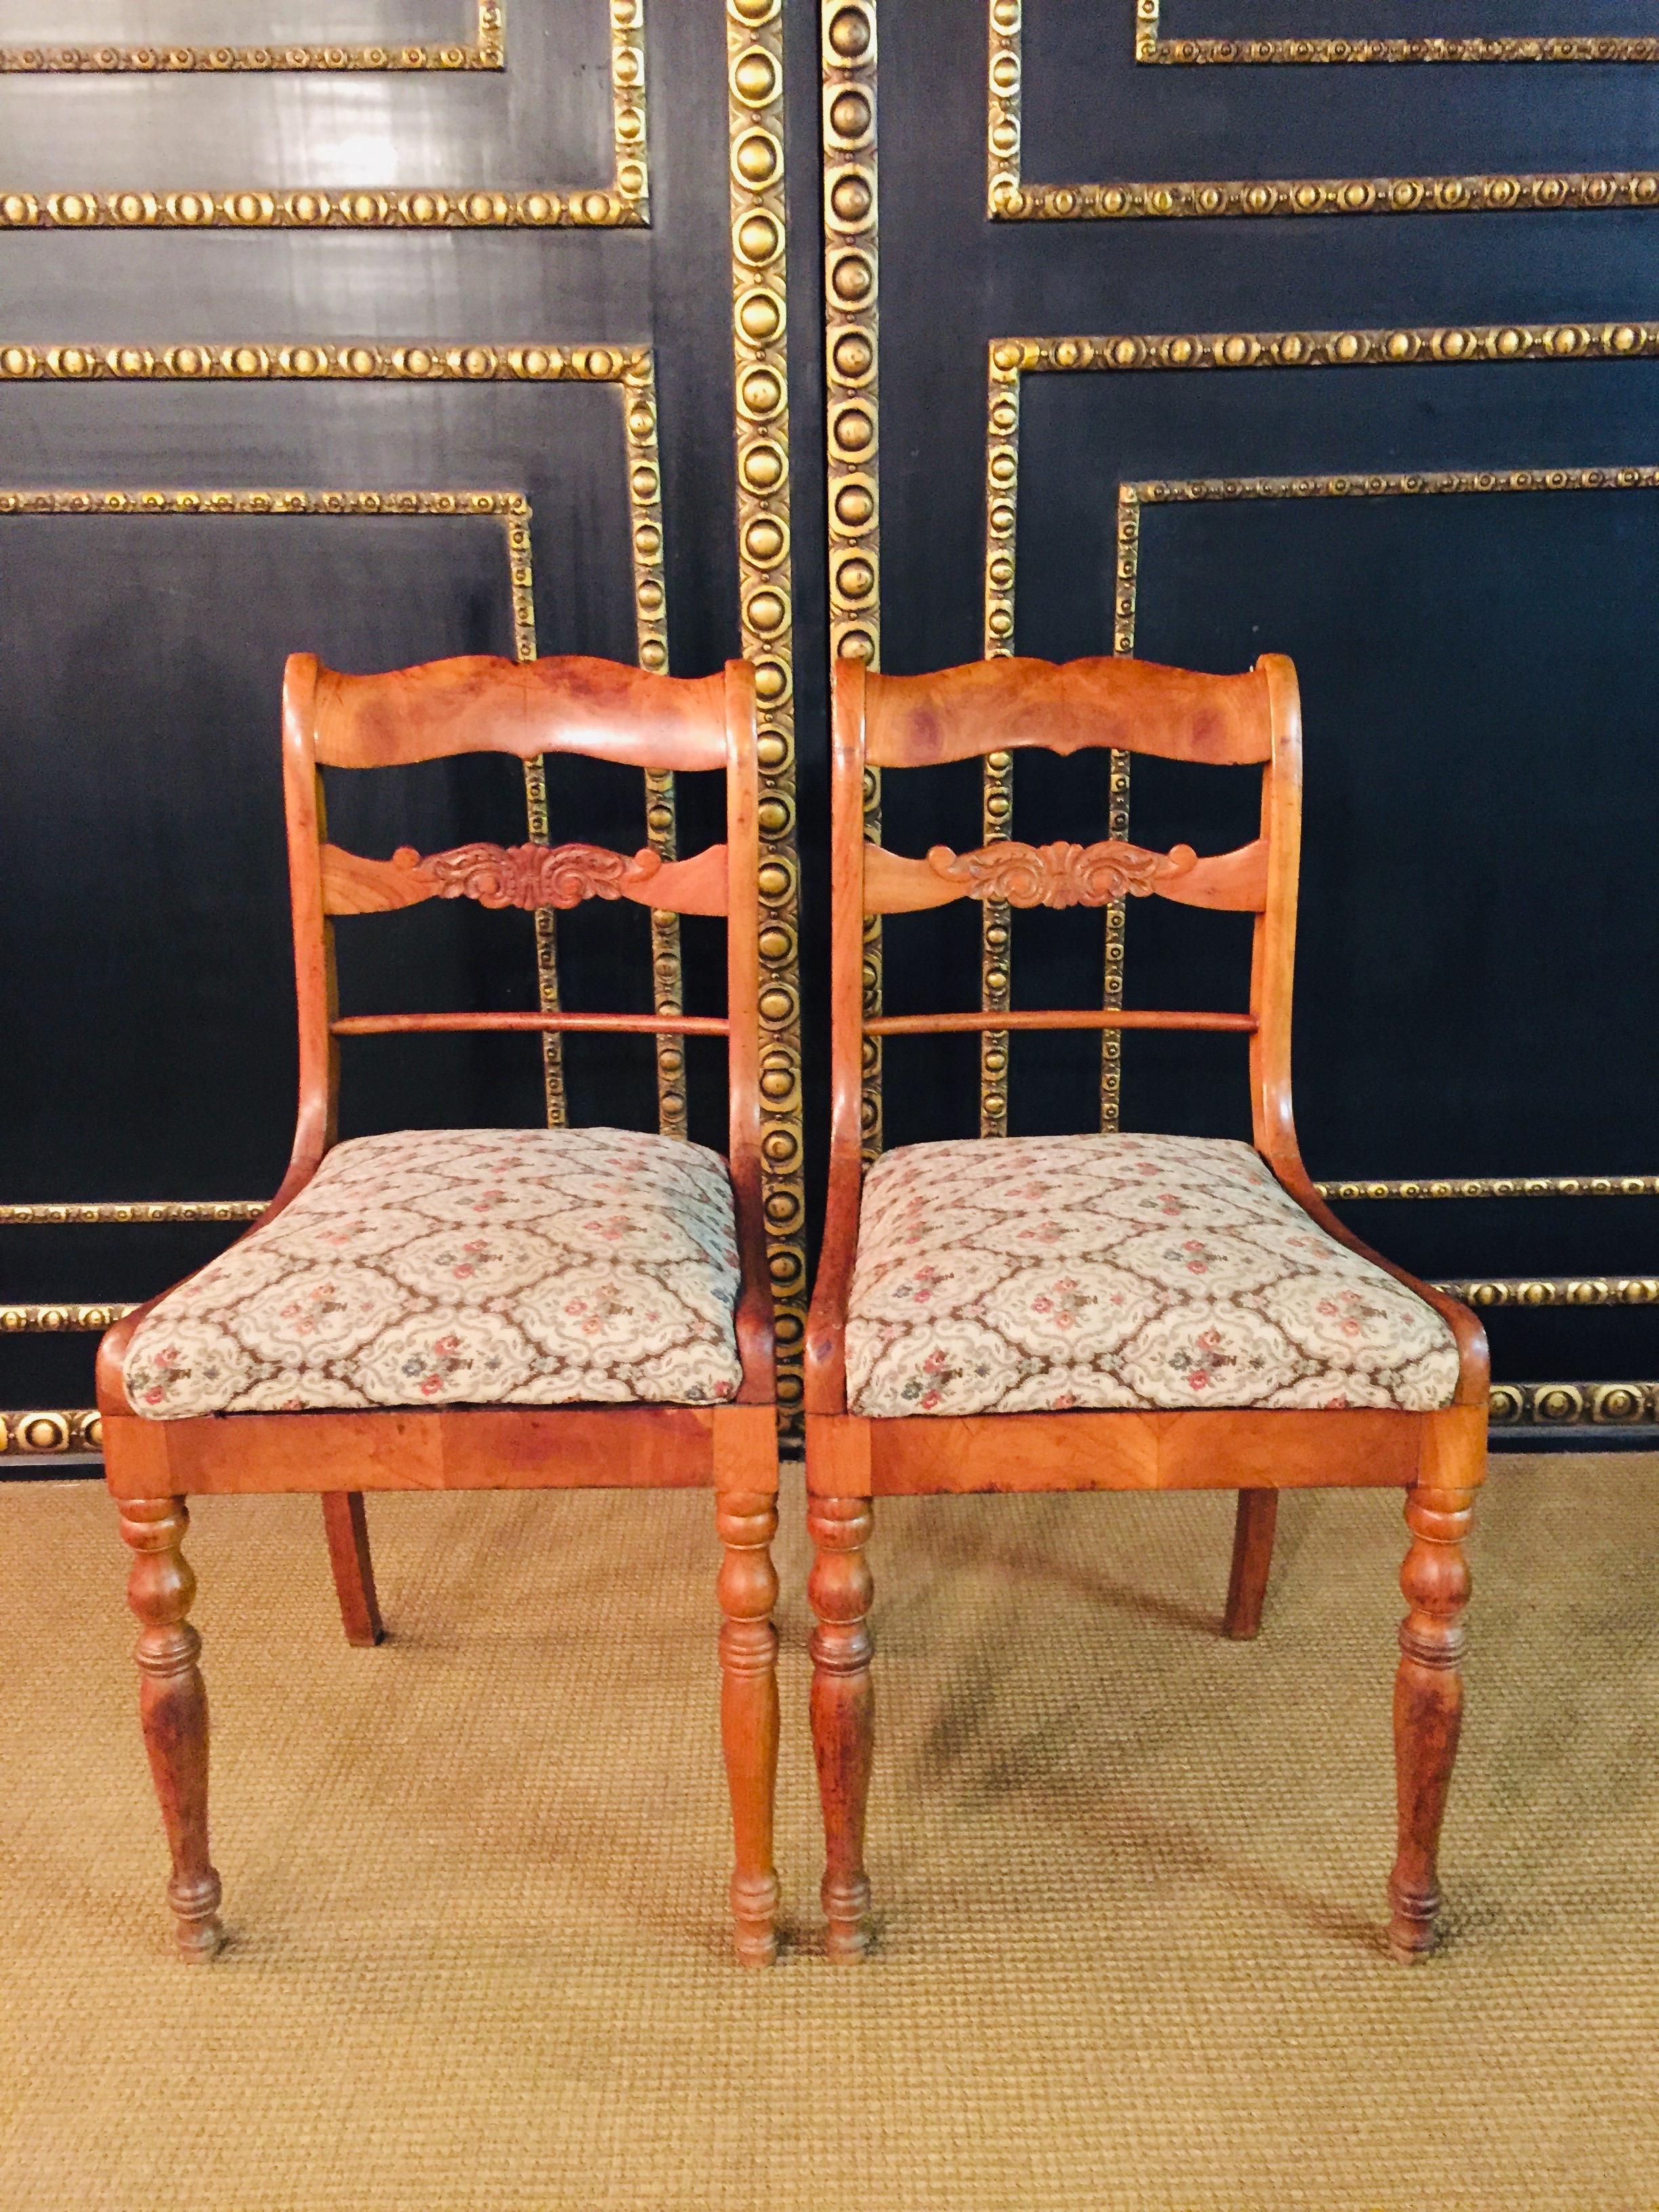 Une paire d'intéressantes chaises Biedermeier, vers 1840
Cerisier, cadre droit sur pieds évasés en forme de boule. Cadre de dossier rectangulaire avec extrémité finement incurvée et barre centrale correspondante. Siège rembourré et amovible.
Un